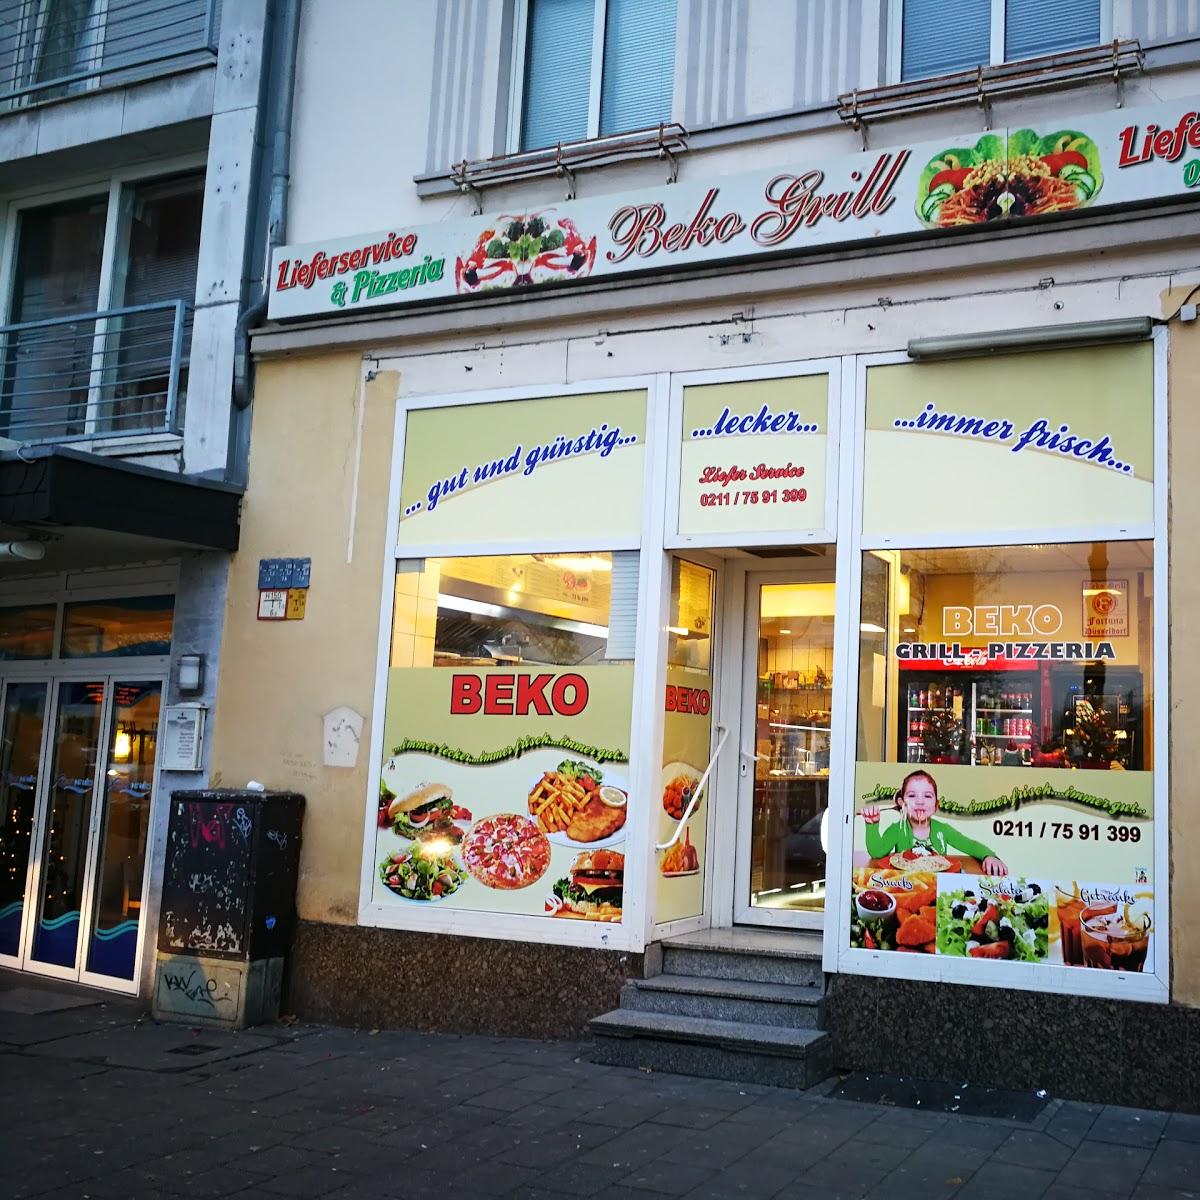 Restaurant "Beko Grill" in Düsseldorf